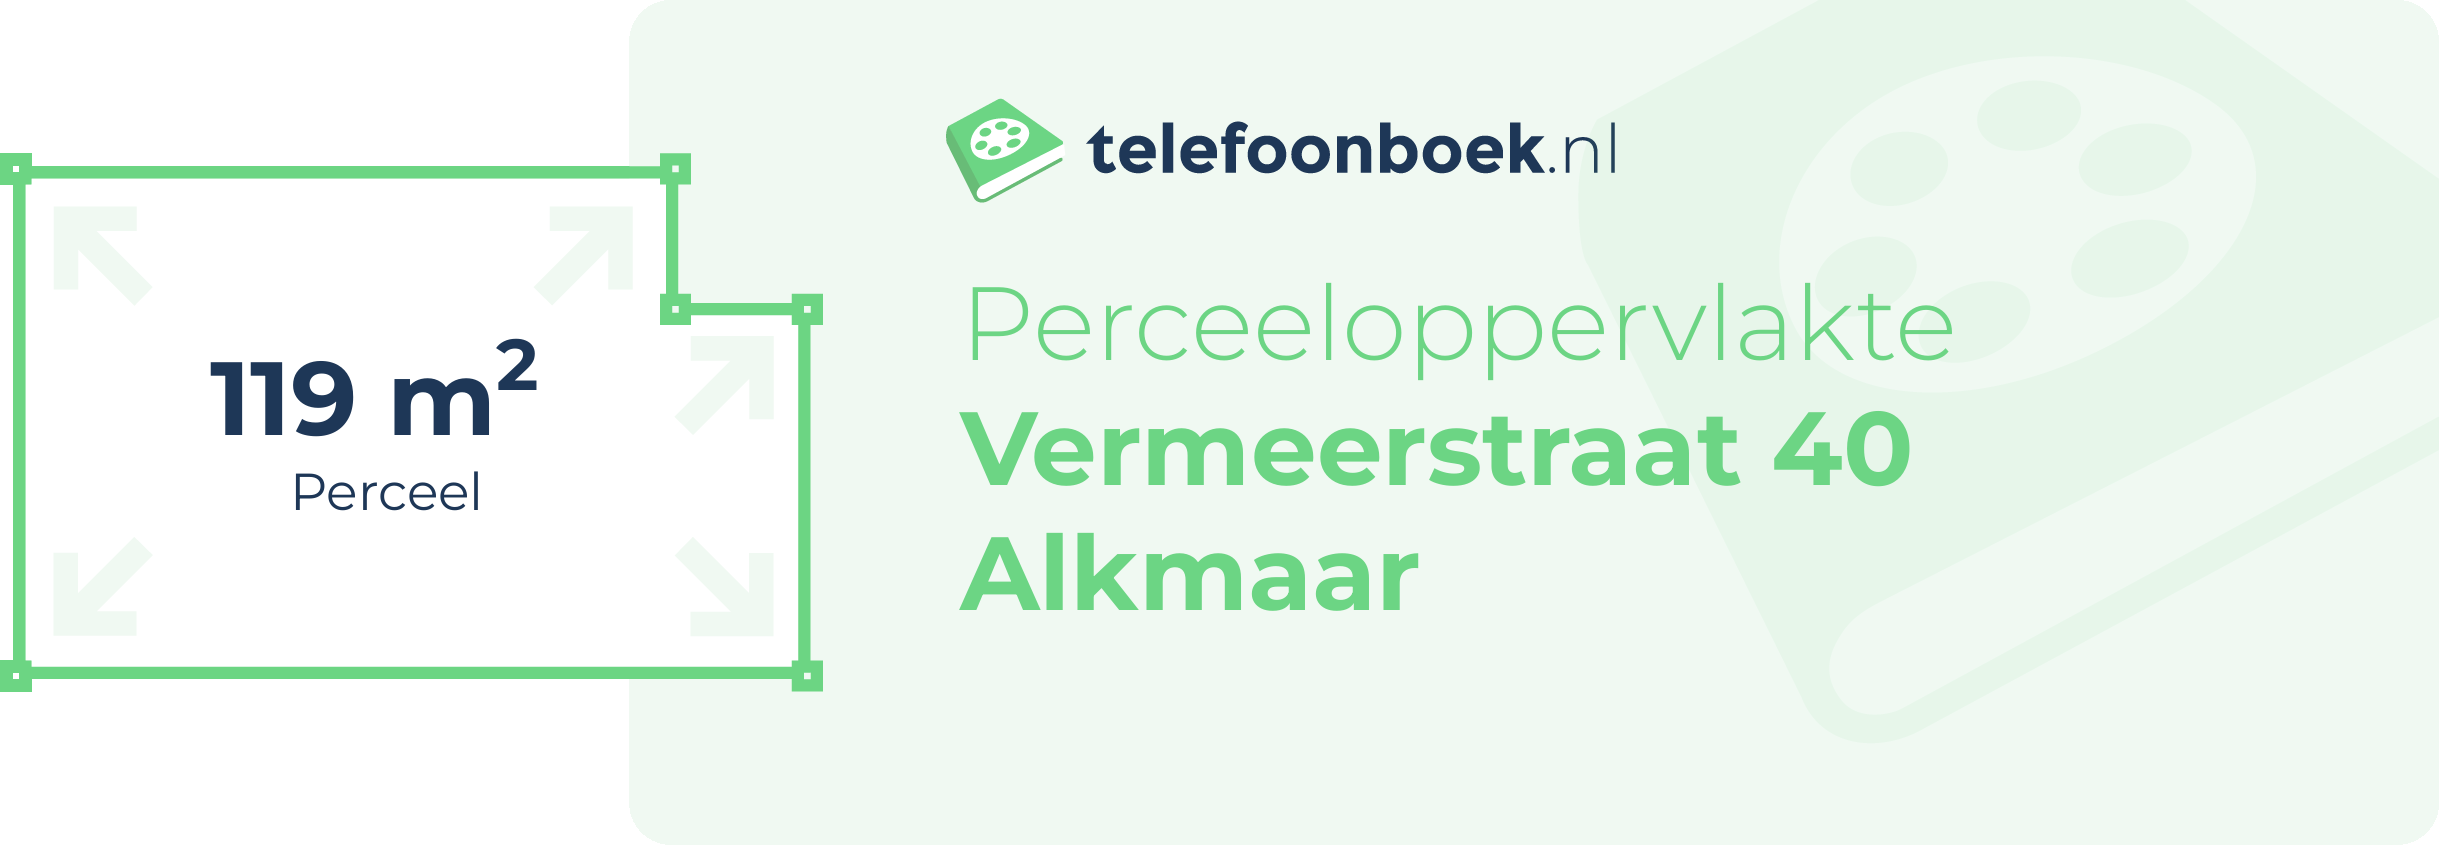 Perceeloppervlakte Vermeerstraat 40 Alkmaar